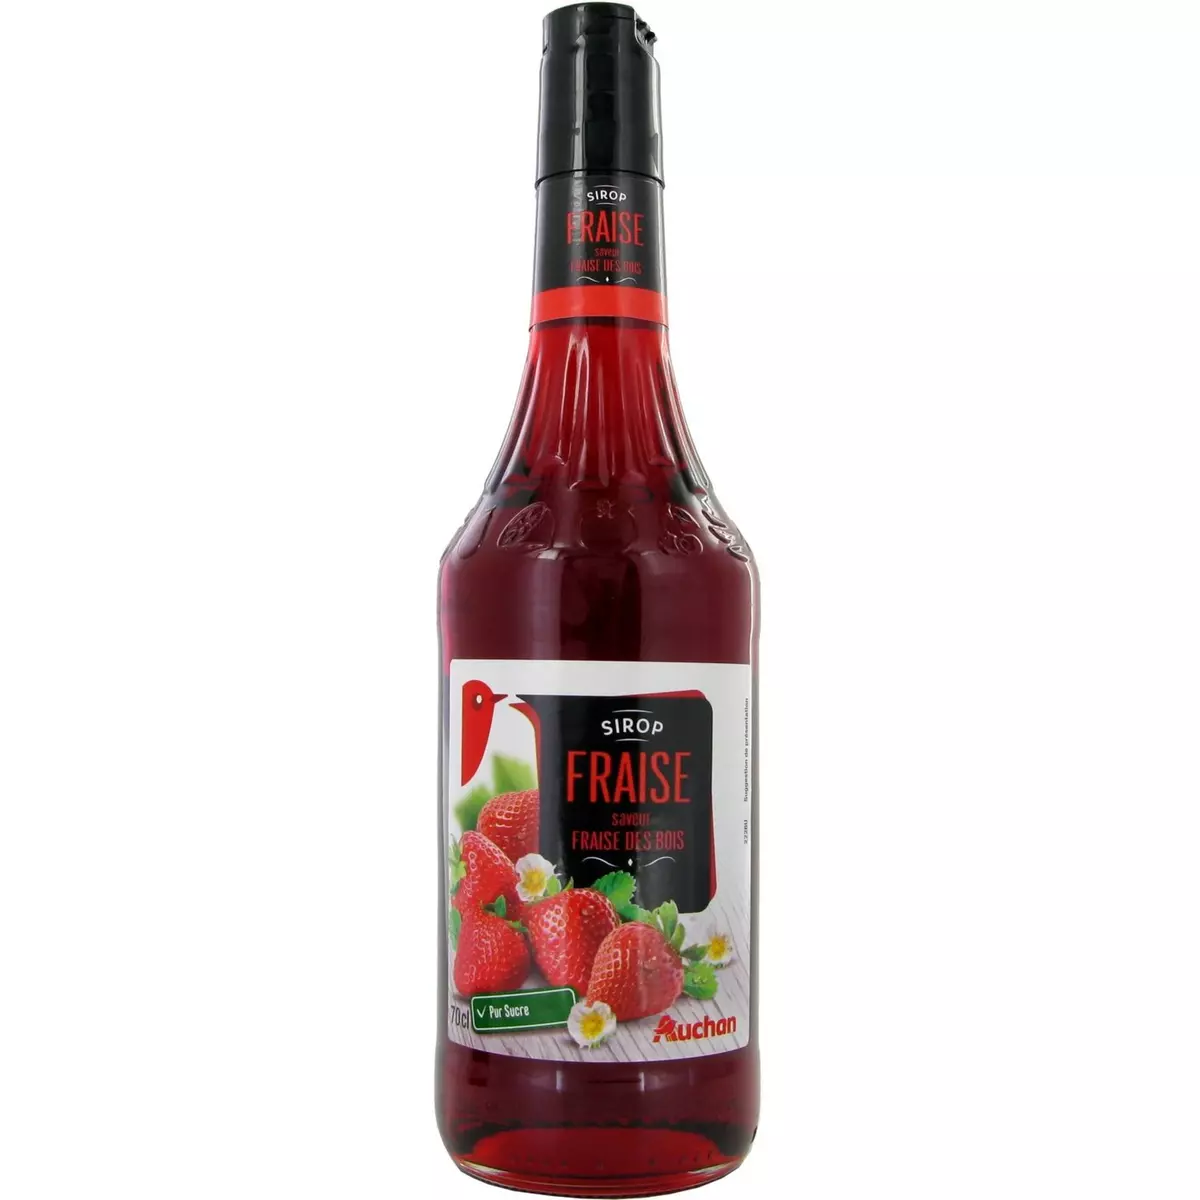 AUCHAN Sirop de fraise et fraise des bois bouteille verre 70cl